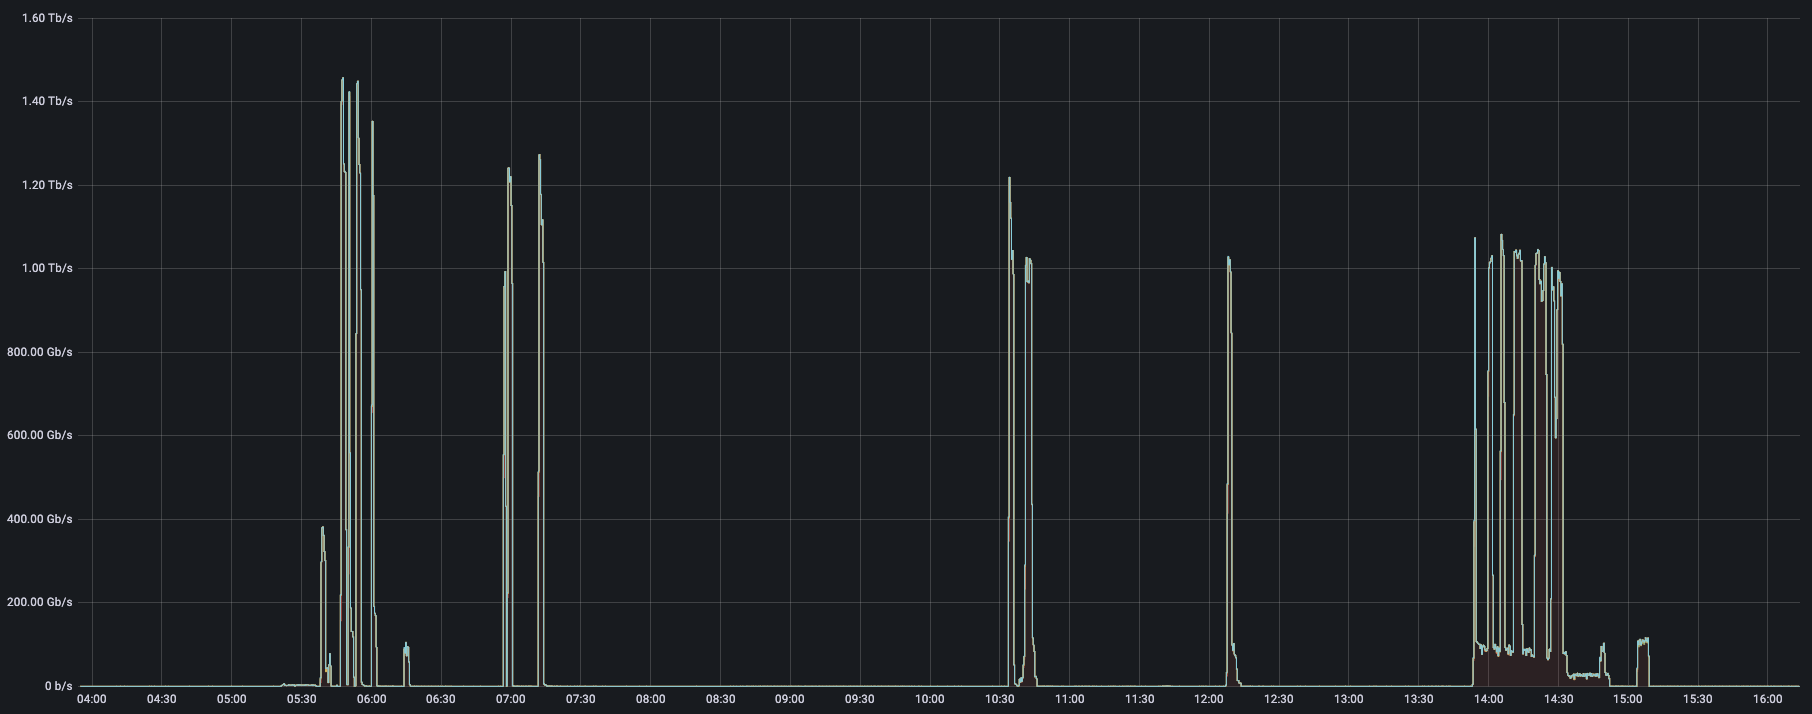 DDoS attacks peaking at 1-1.4 Tbps